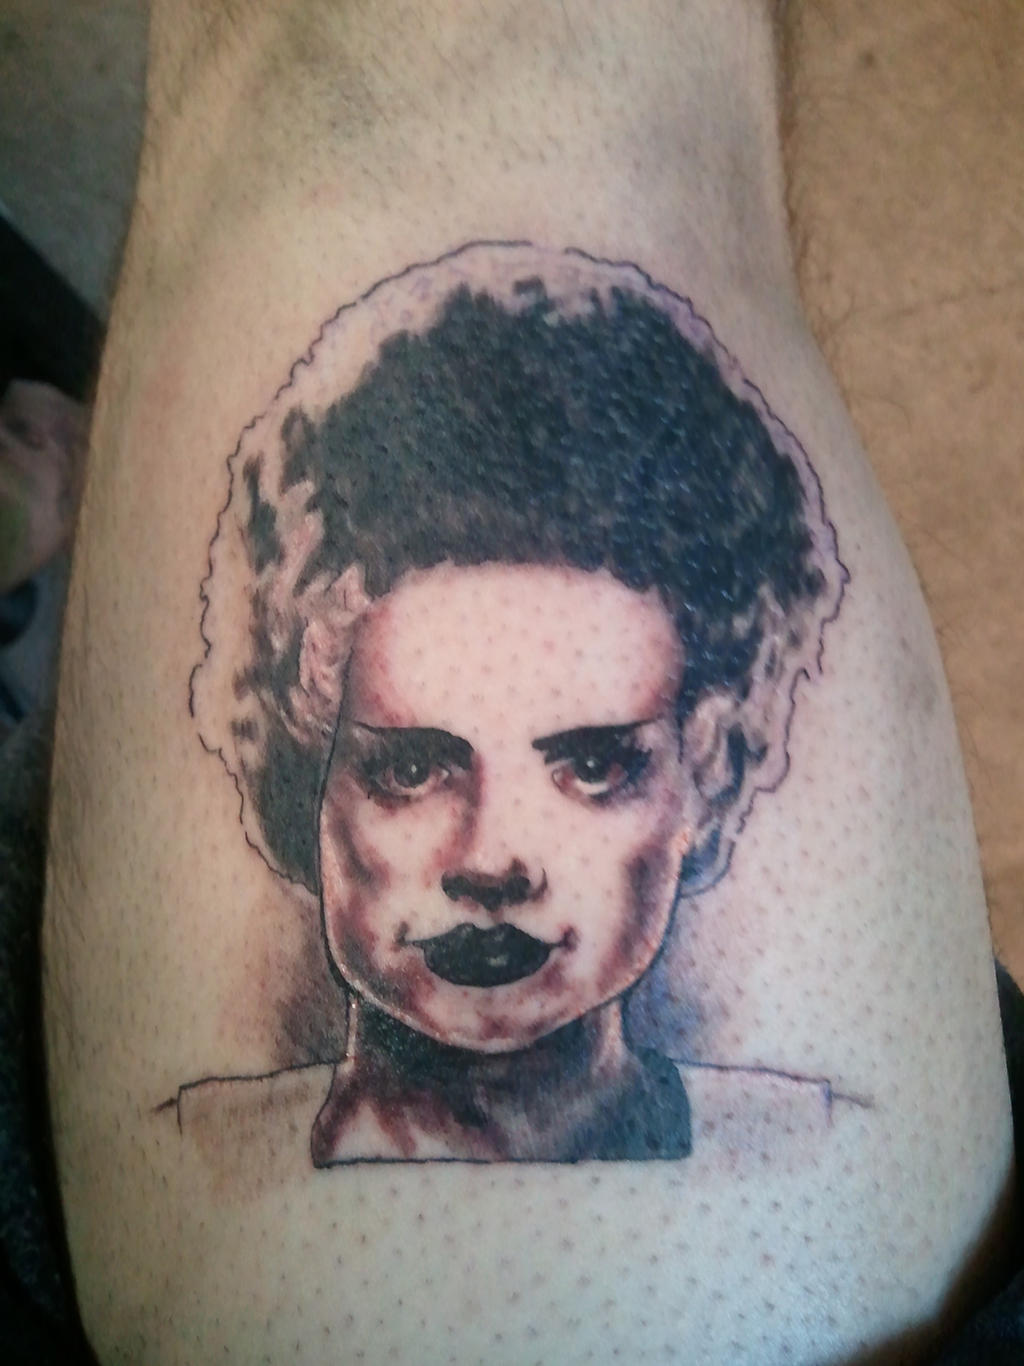 Bride of Frankenstein Tattoo by M1st3RSin1STeR on DeviantArt